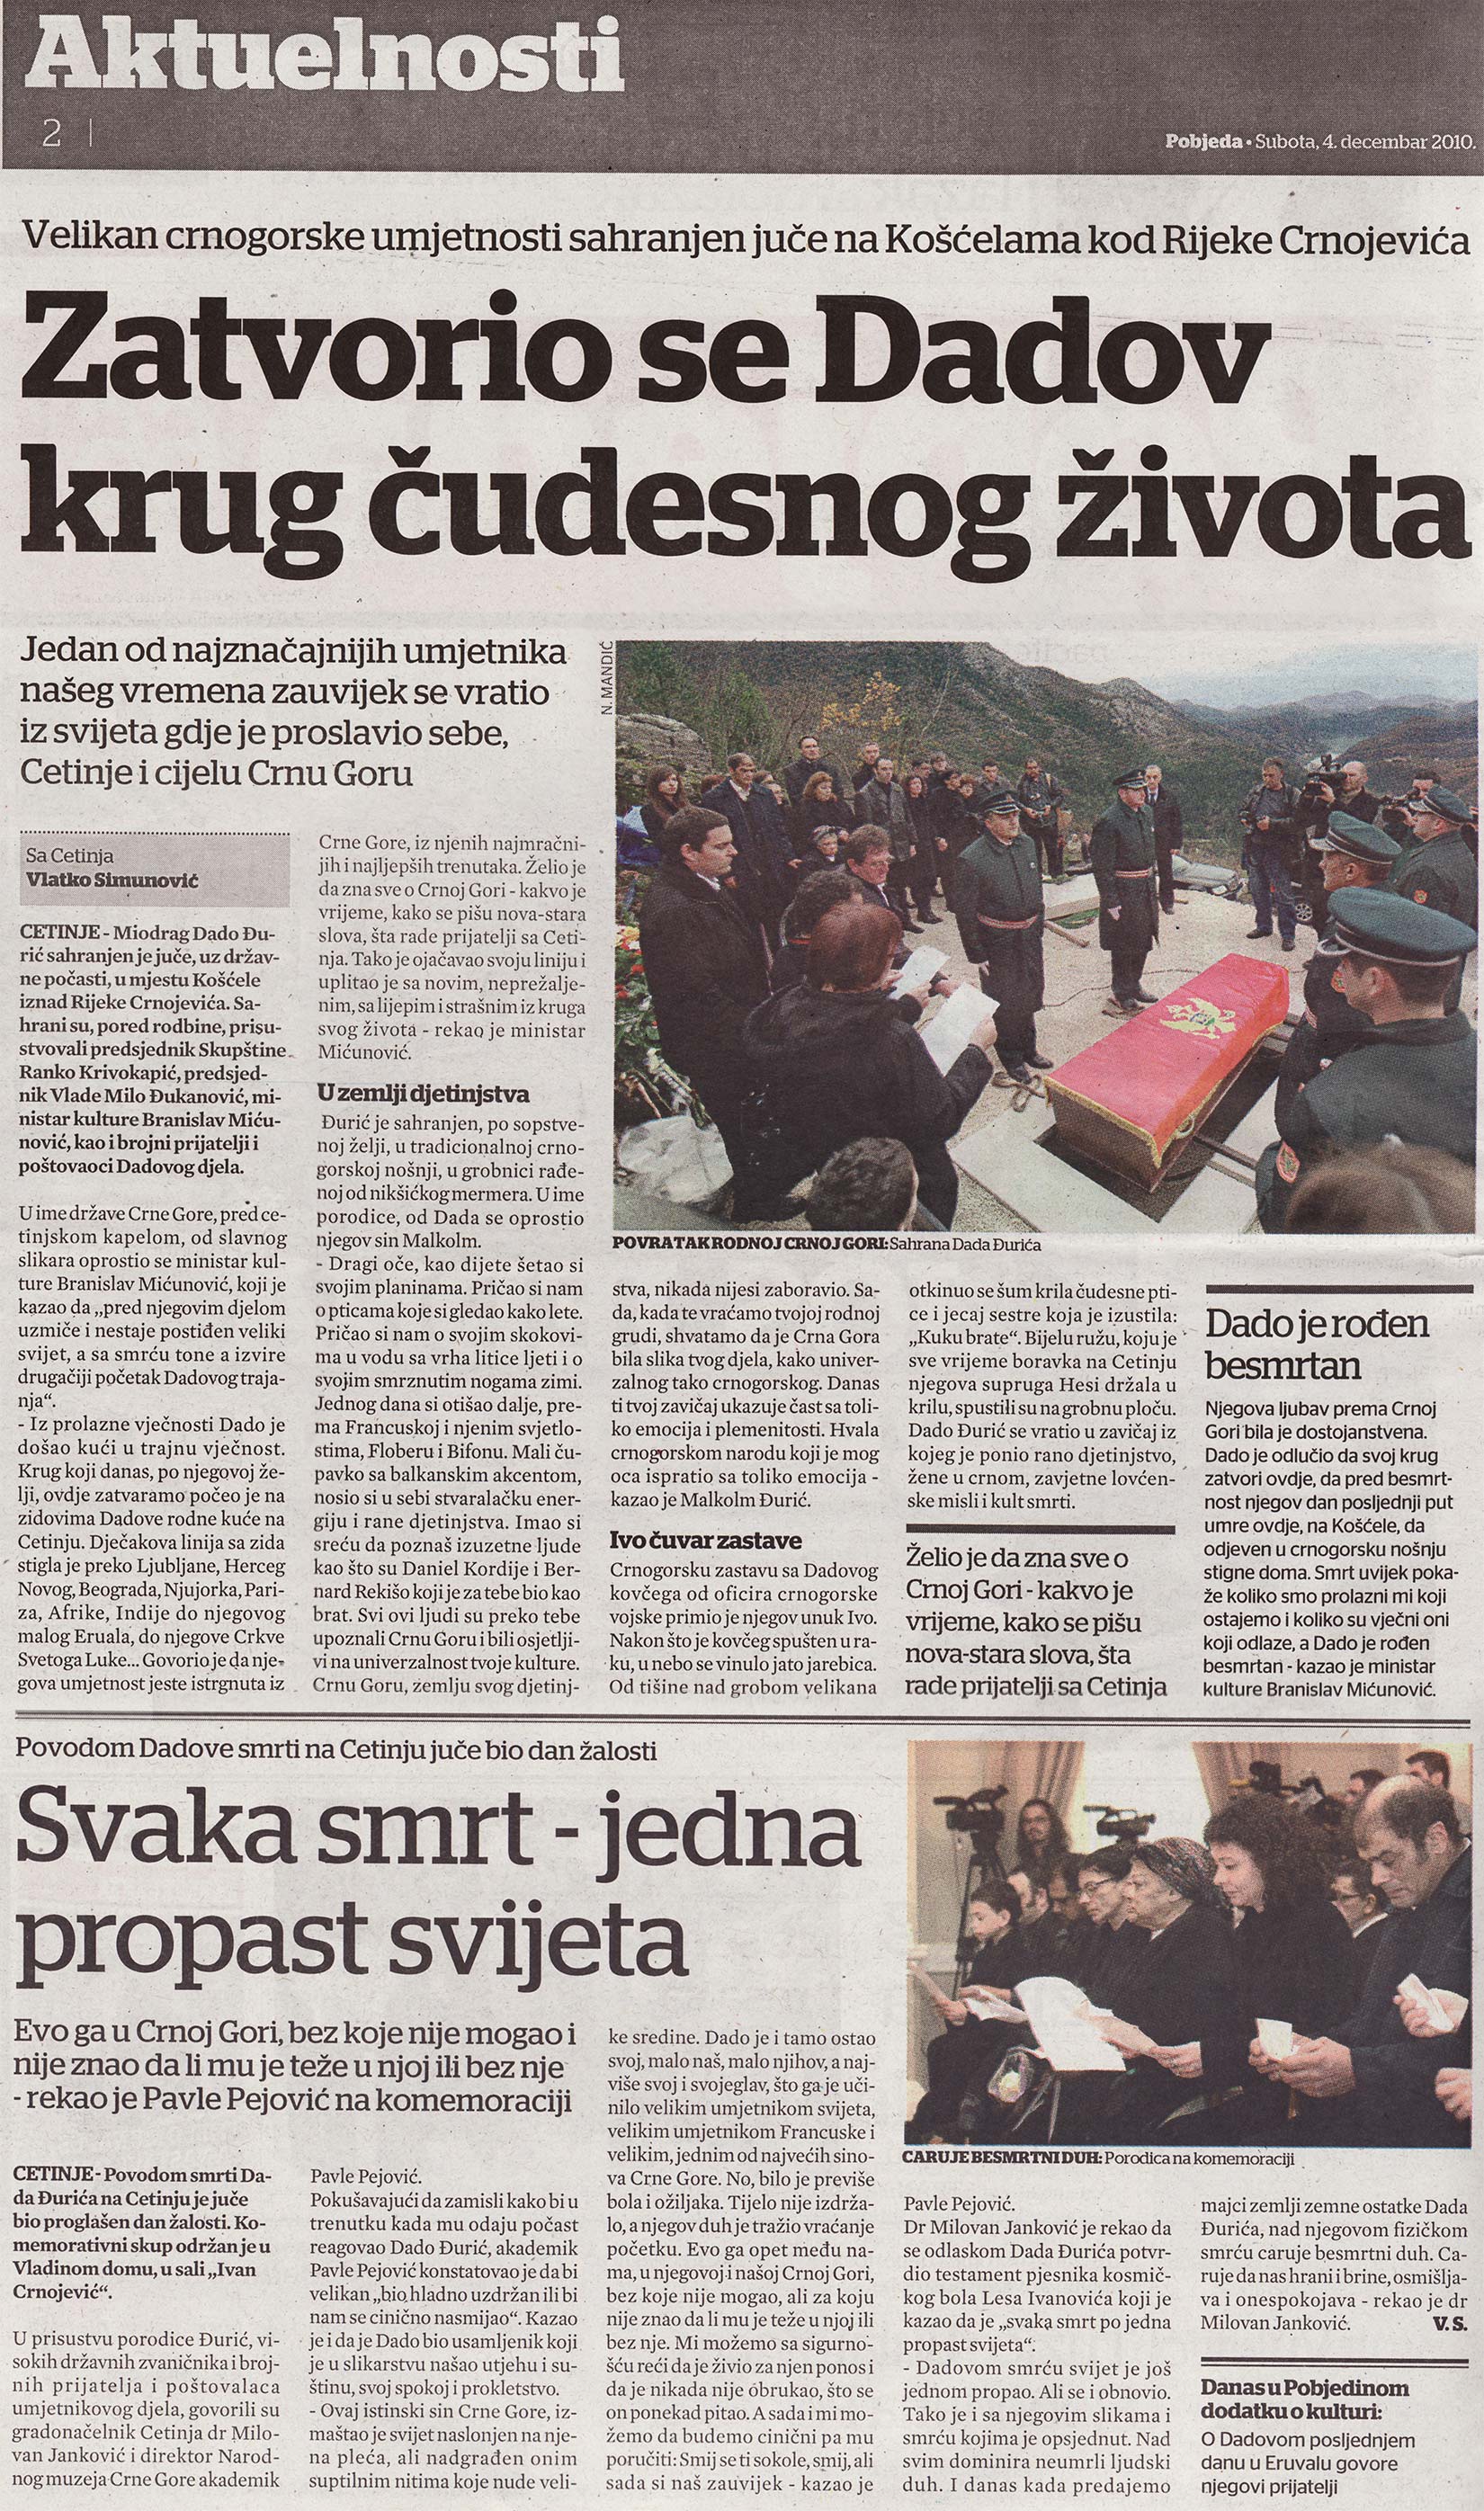 Journal Pobjeda du 4 décembre 2010